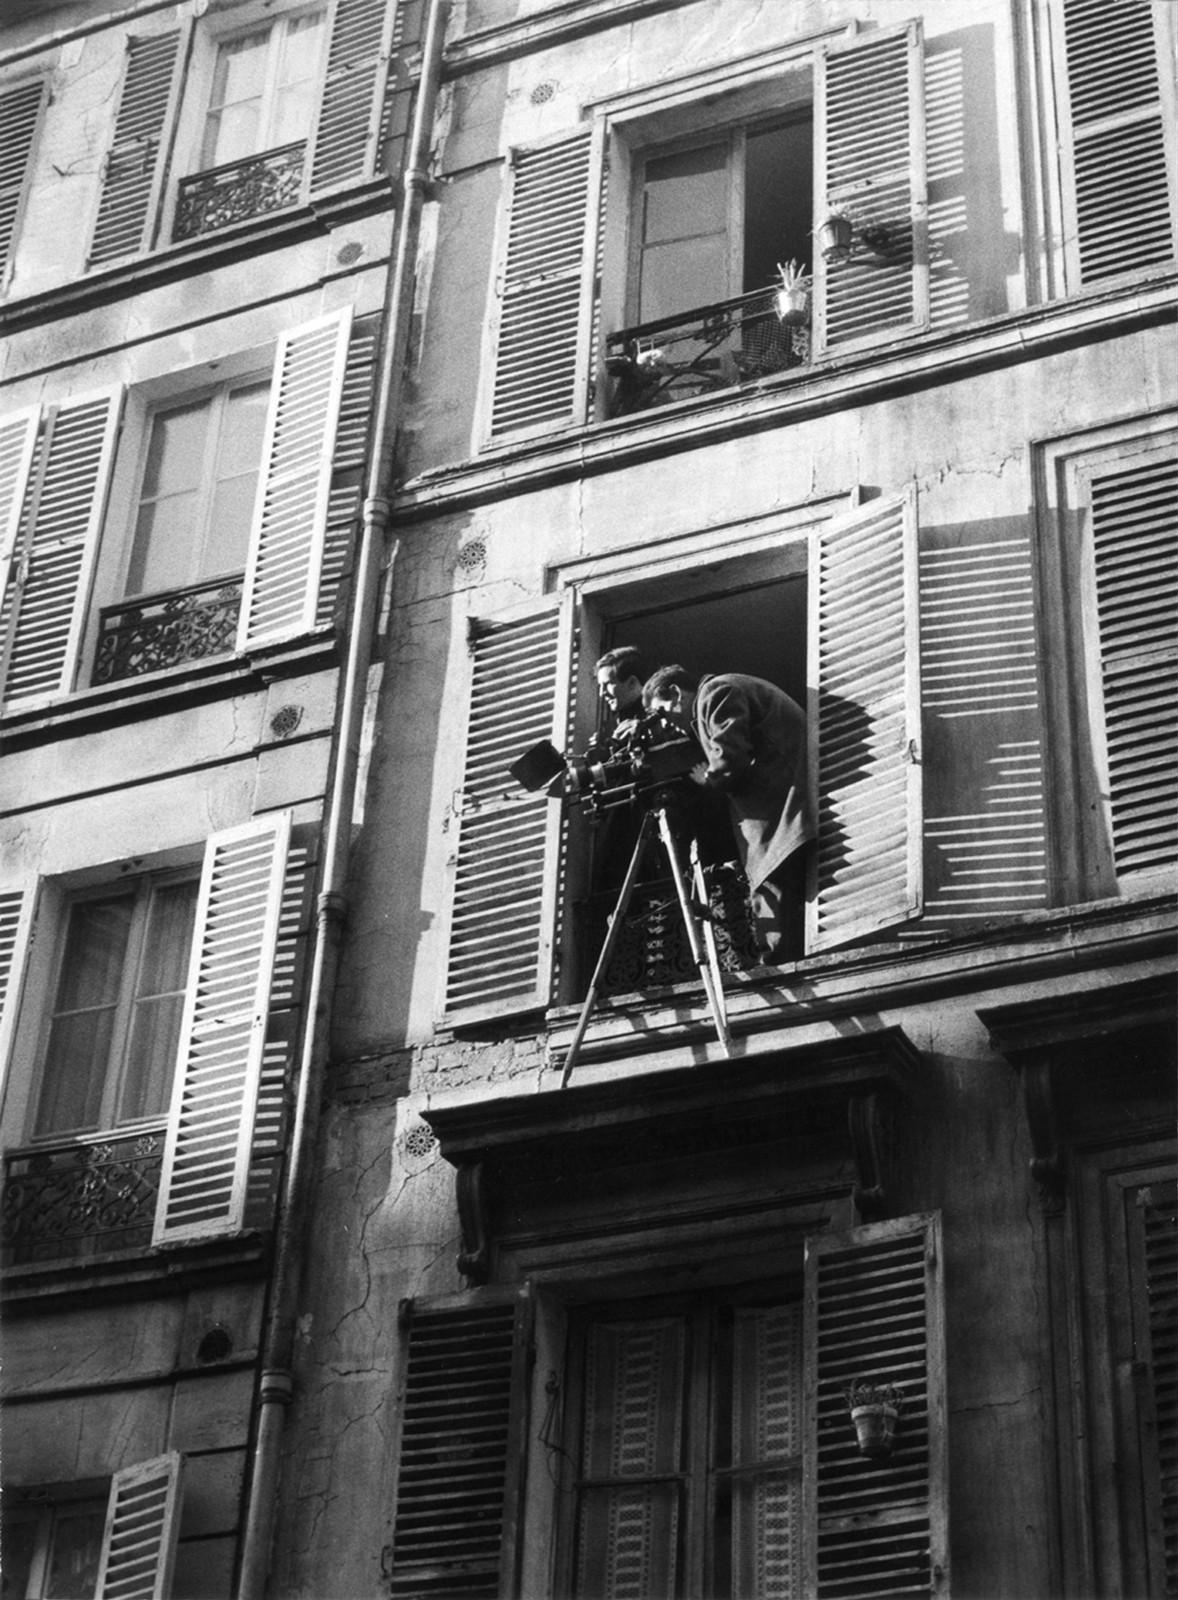 Baisers volés (François Truffaut, 1968). Paris, rue Nollet, 1968.